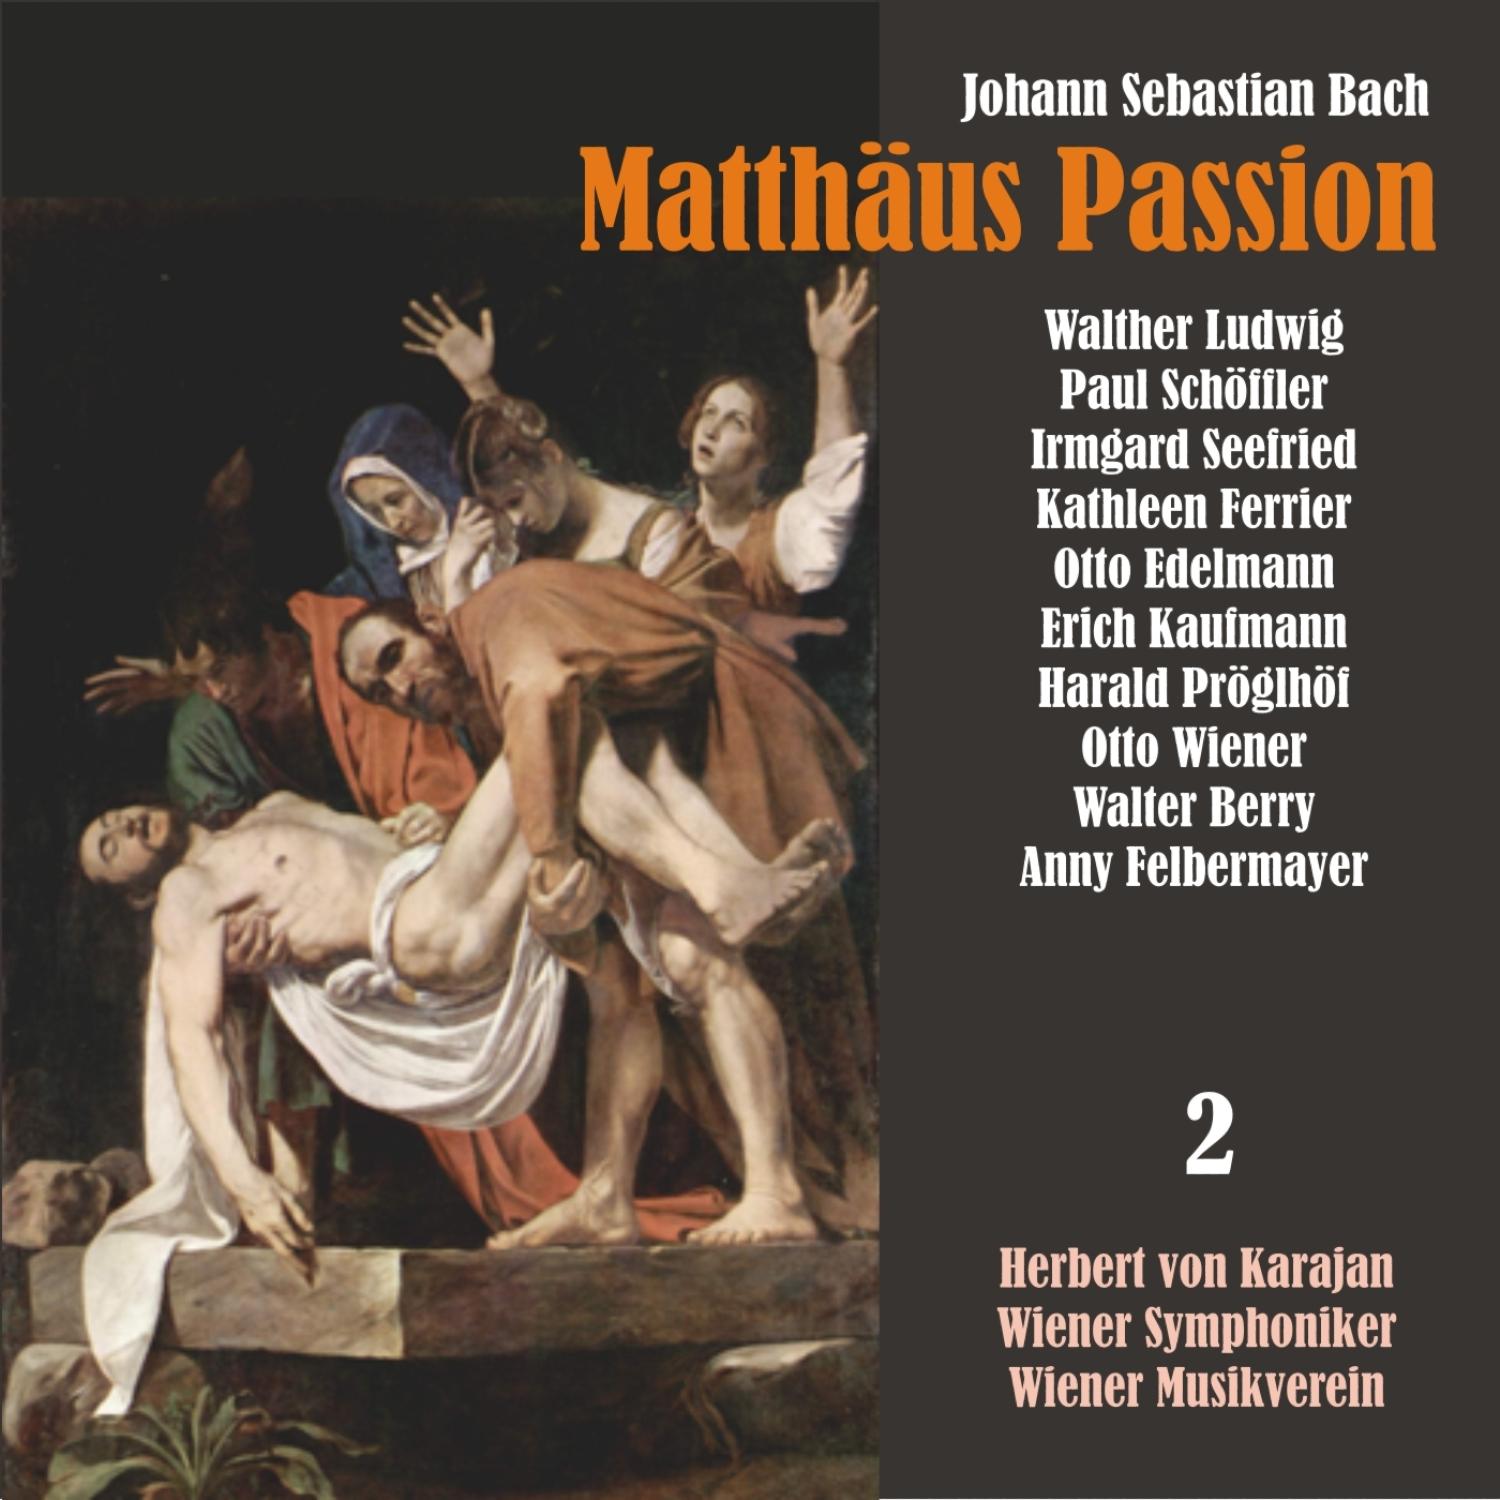 Matthäus Passion, BWV 244: "So ist men Jesus nun ge'angen" / "Sind Blitze, sind bonner'"